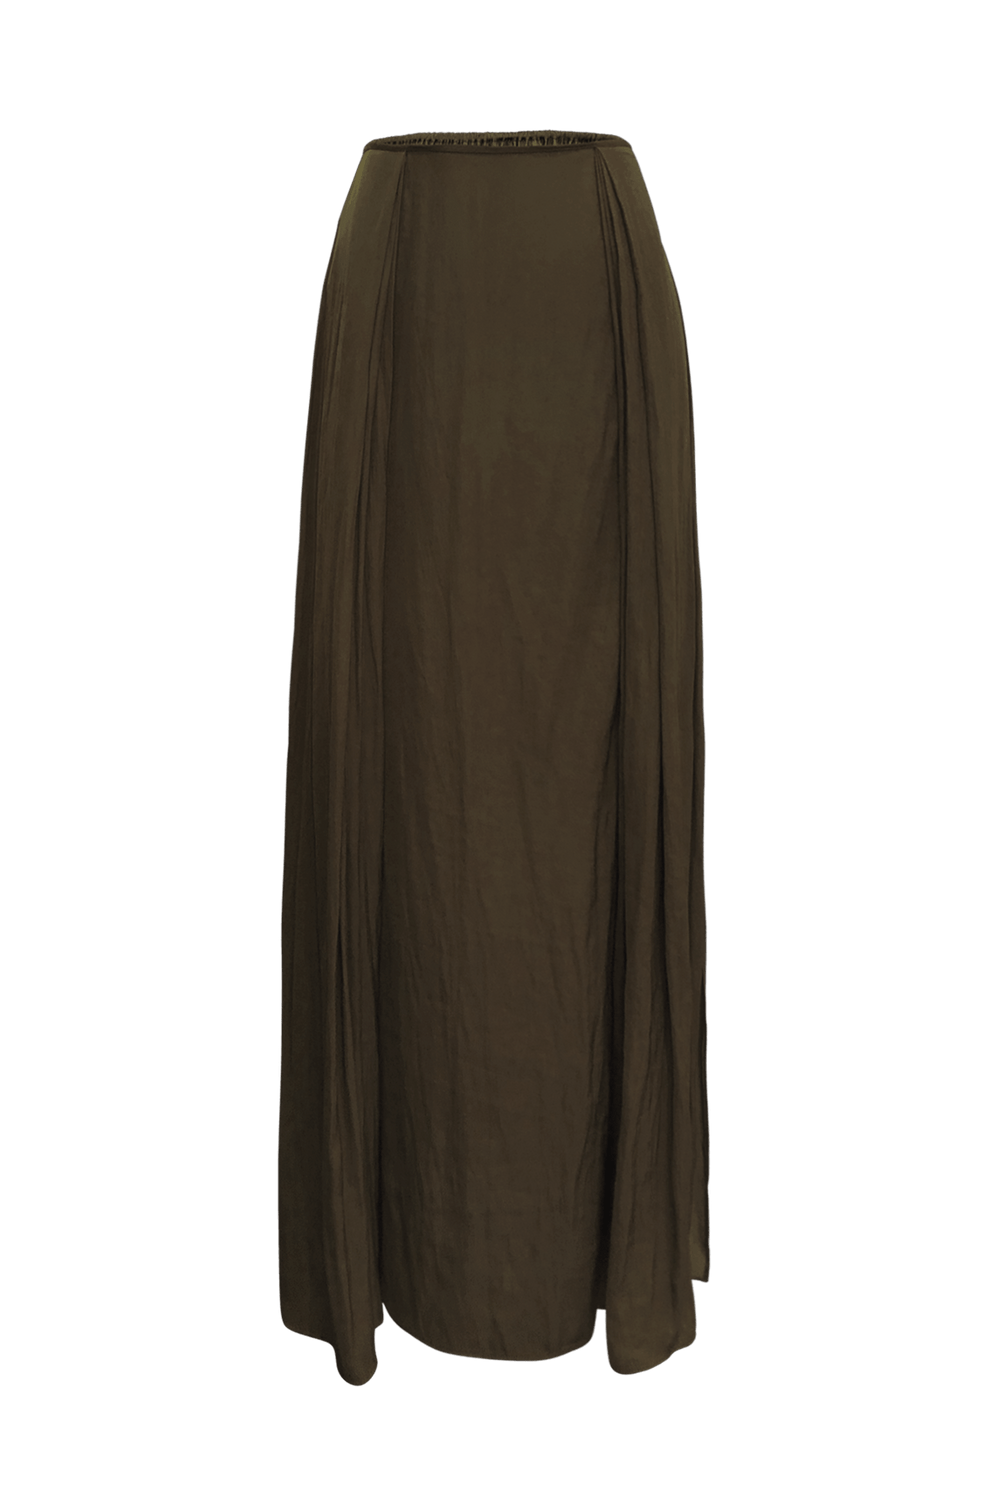 Silhouette Skirt